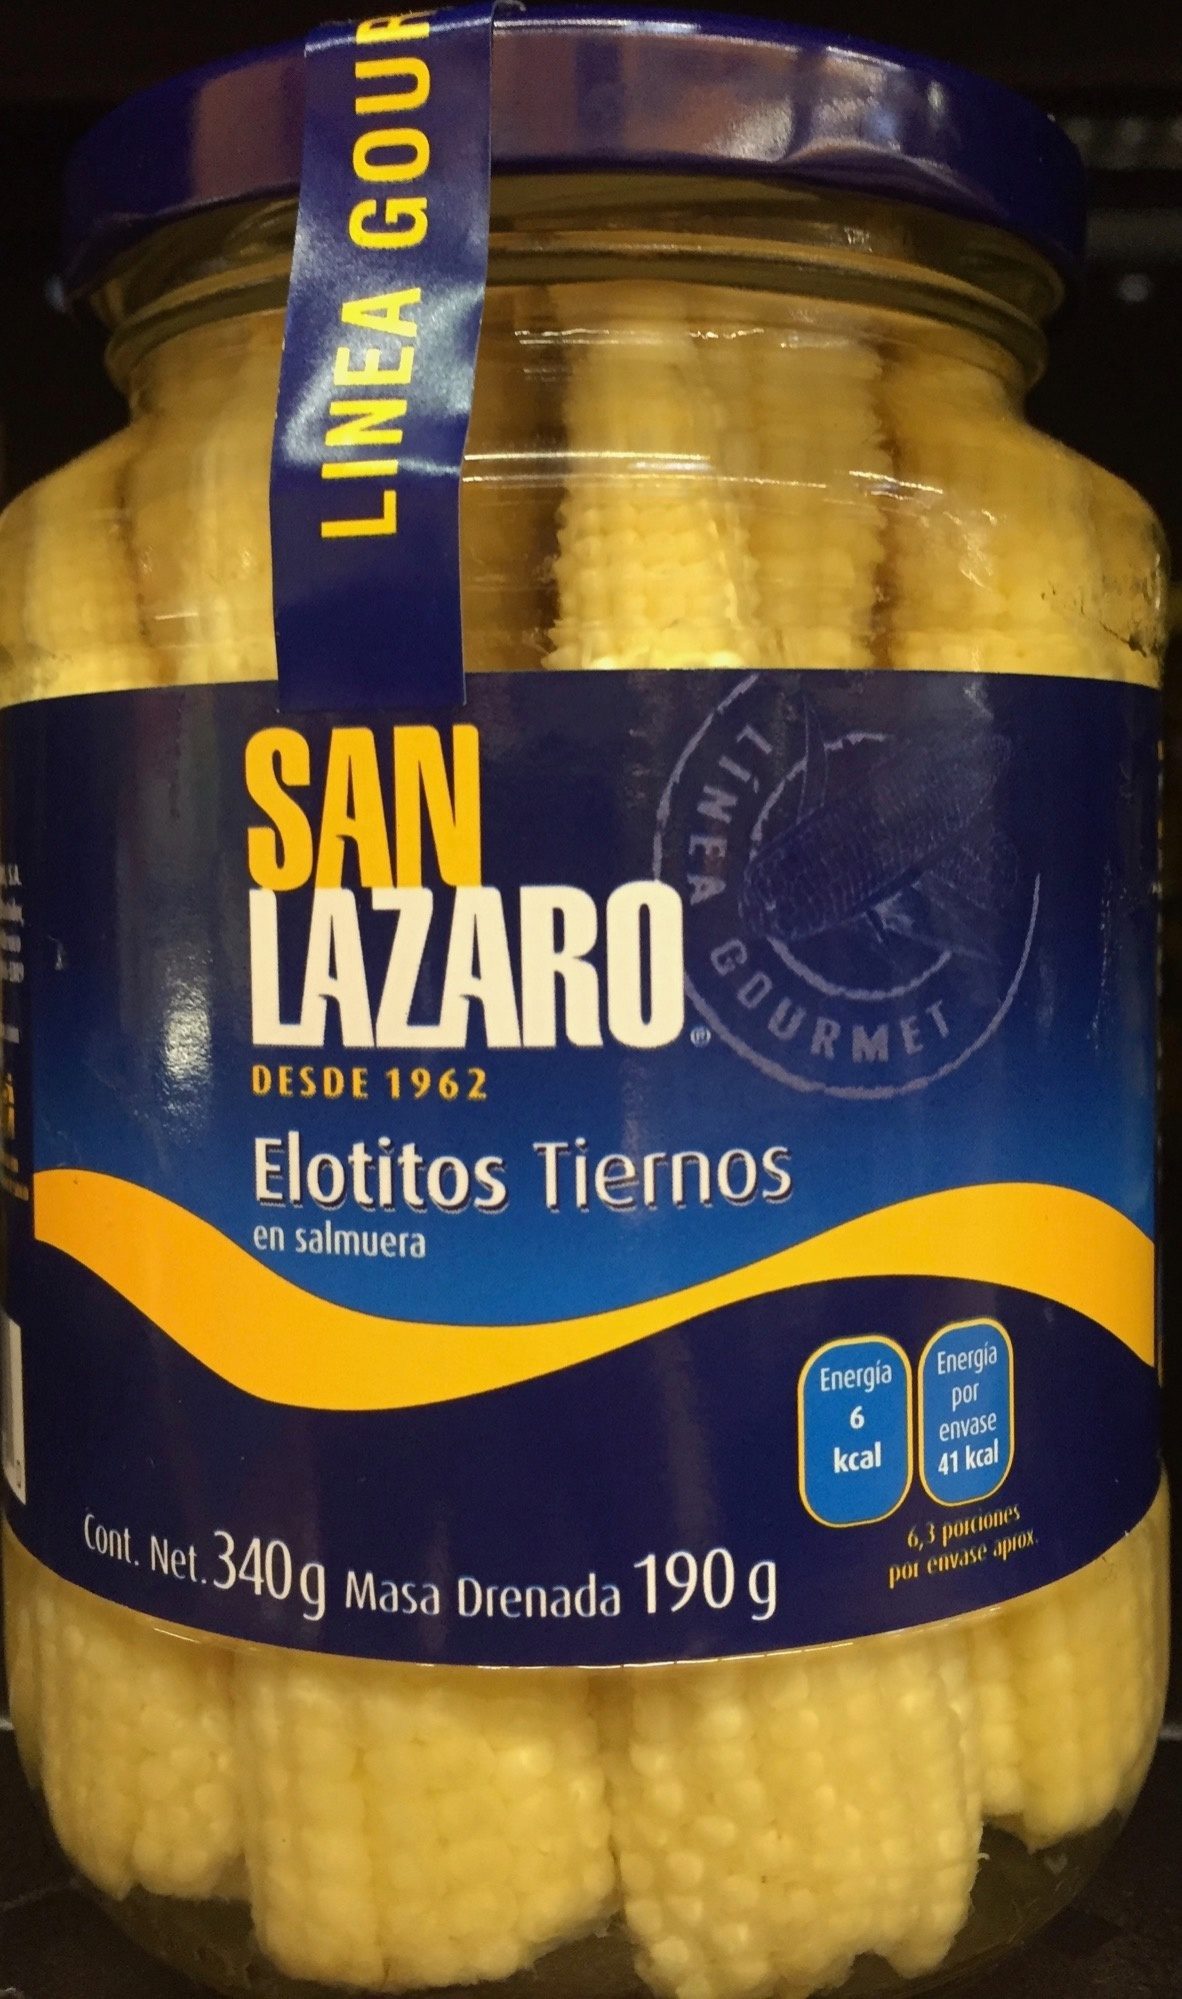 Elotitos tiernos San Lázaro - Producto